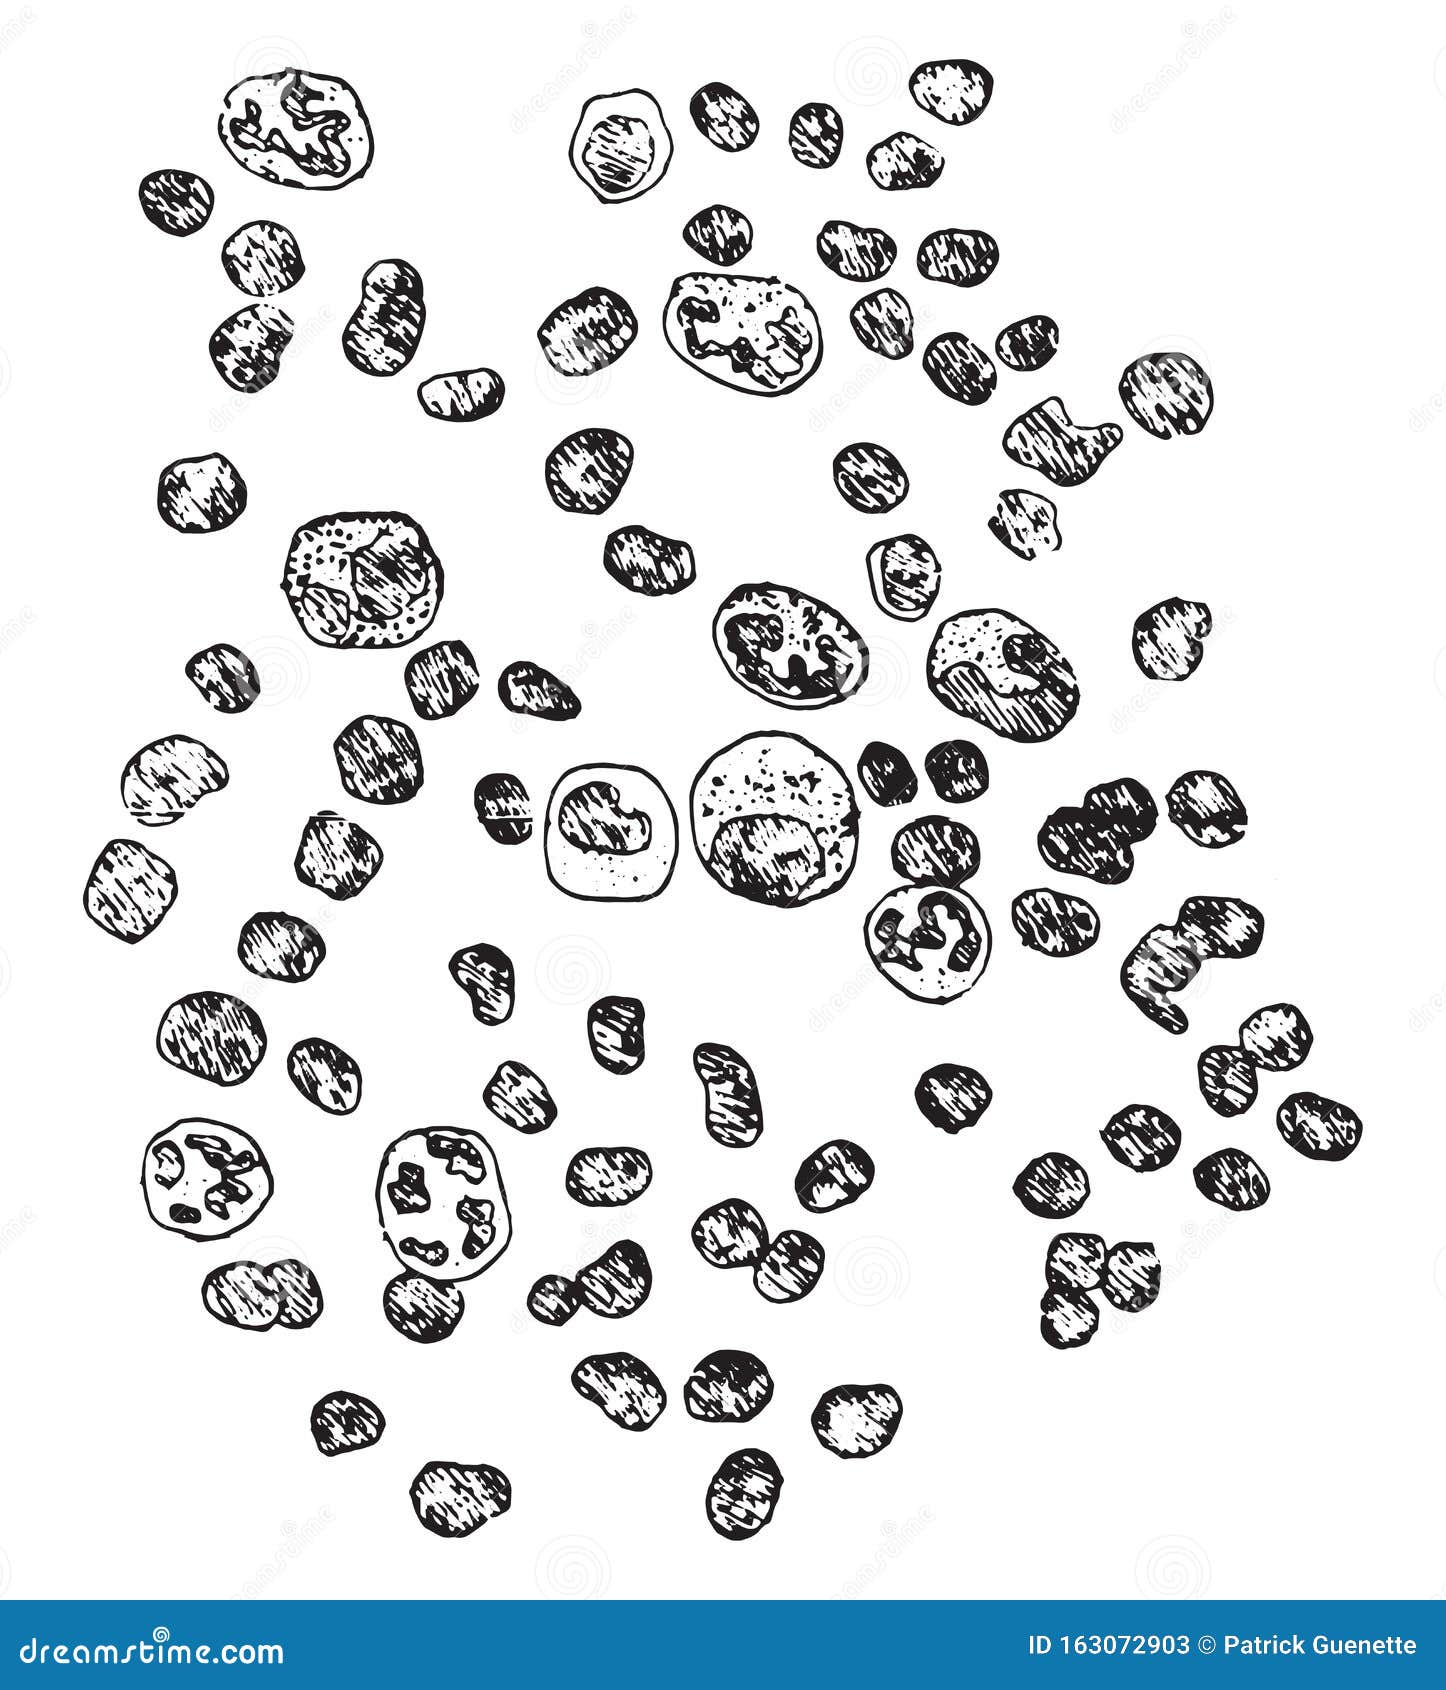 diagrammatic representation of leukocytes, vintage engraving